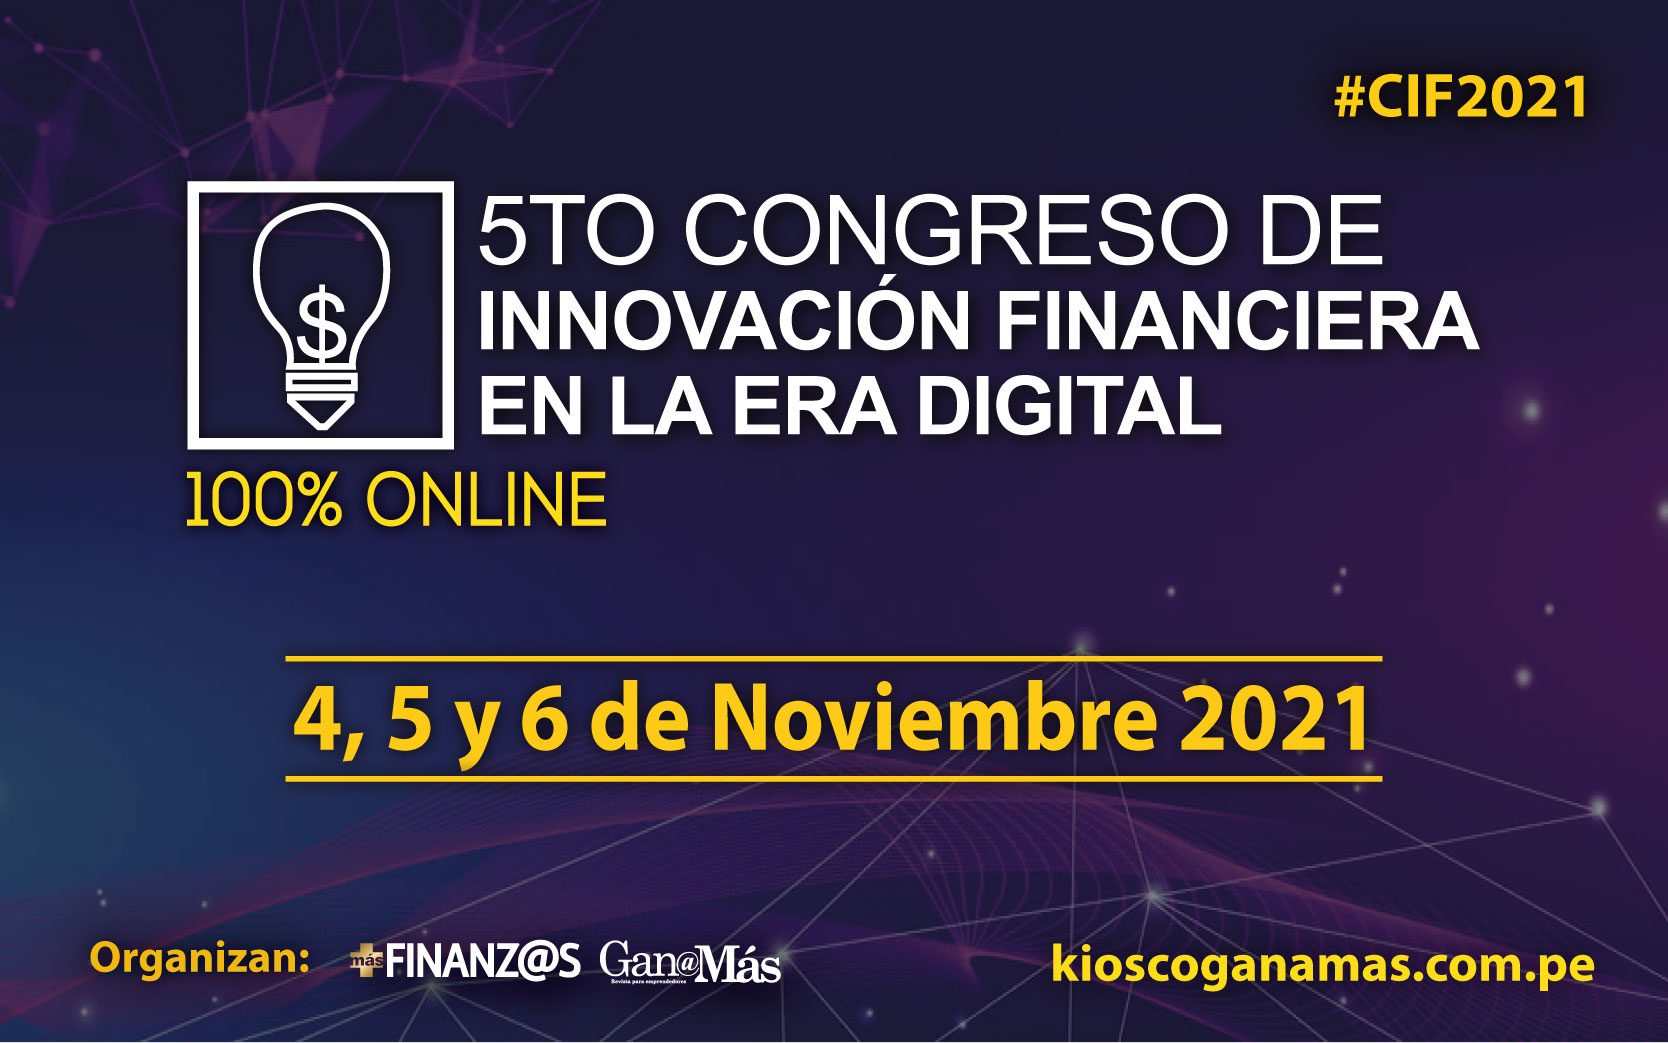 5to Congreso de Innovación Financiera